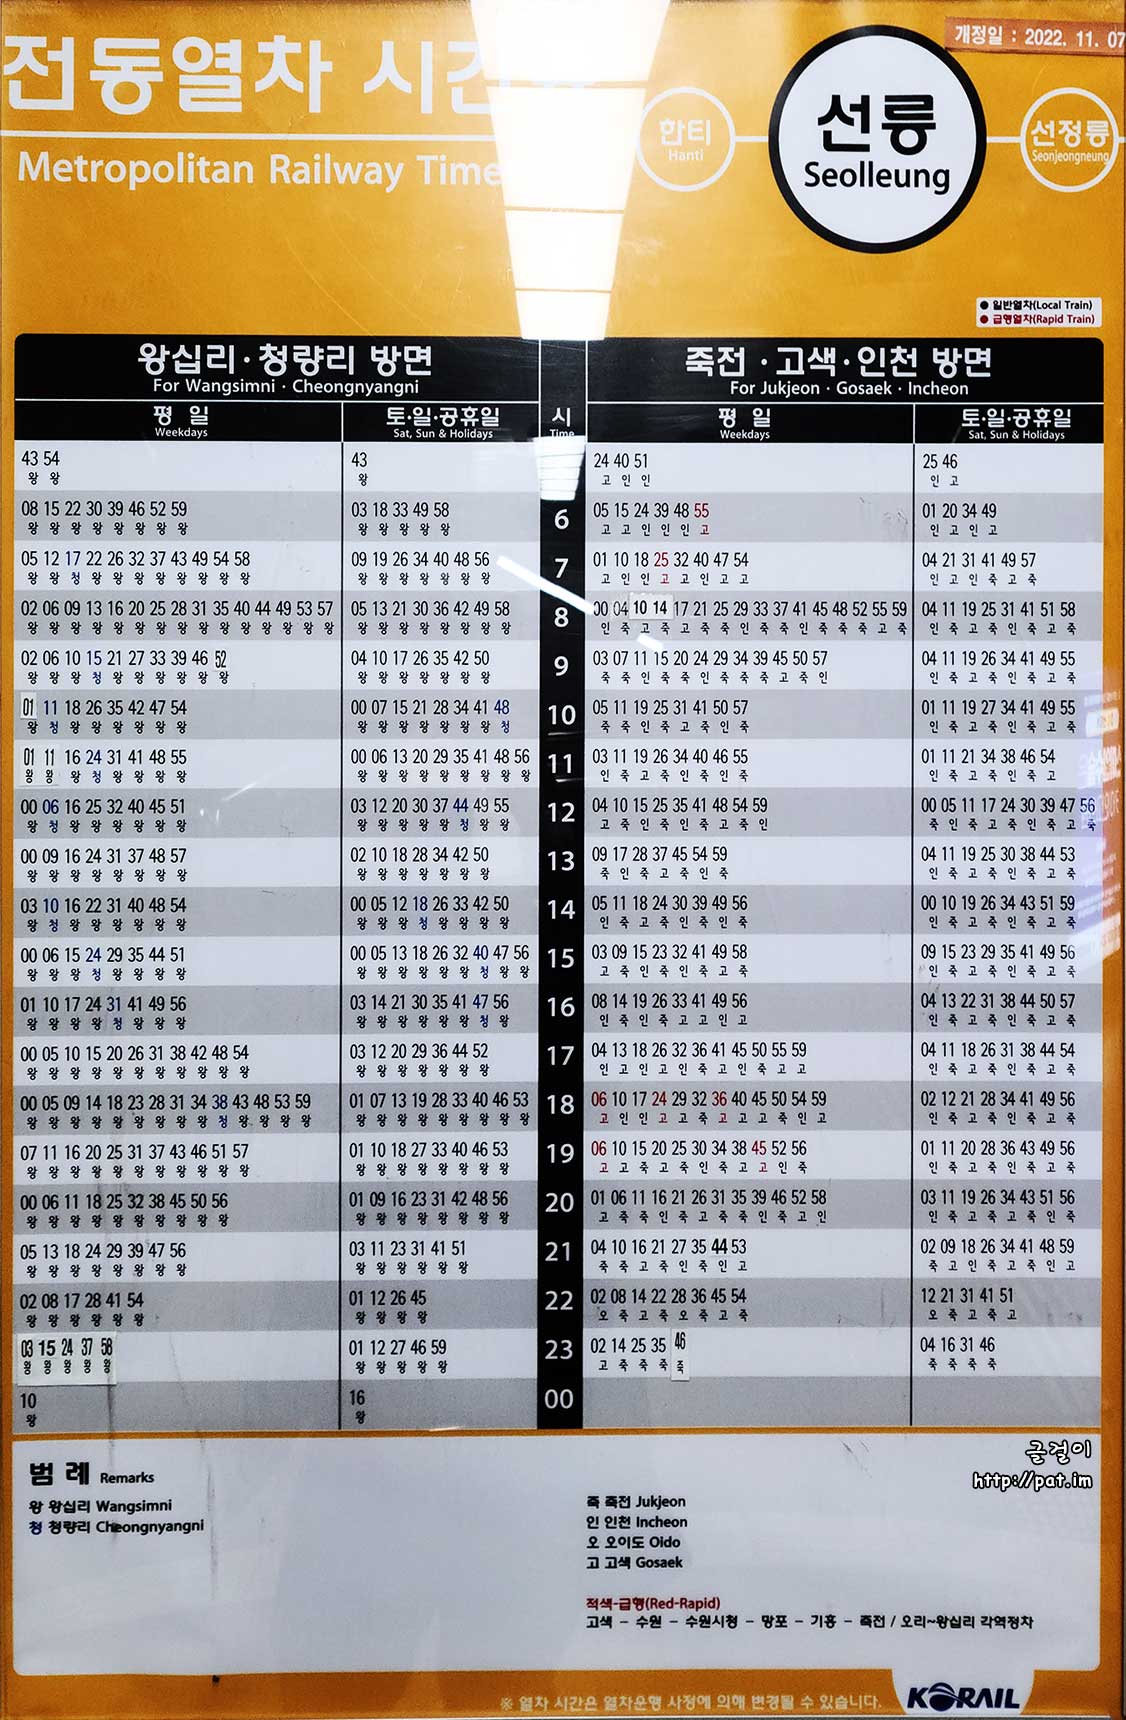 수인분당선 서현역 전동열차 시간표 (왕십리 · 청량리 방면, 죽전 · 고색· 인천 방면) (2022.11.7~)